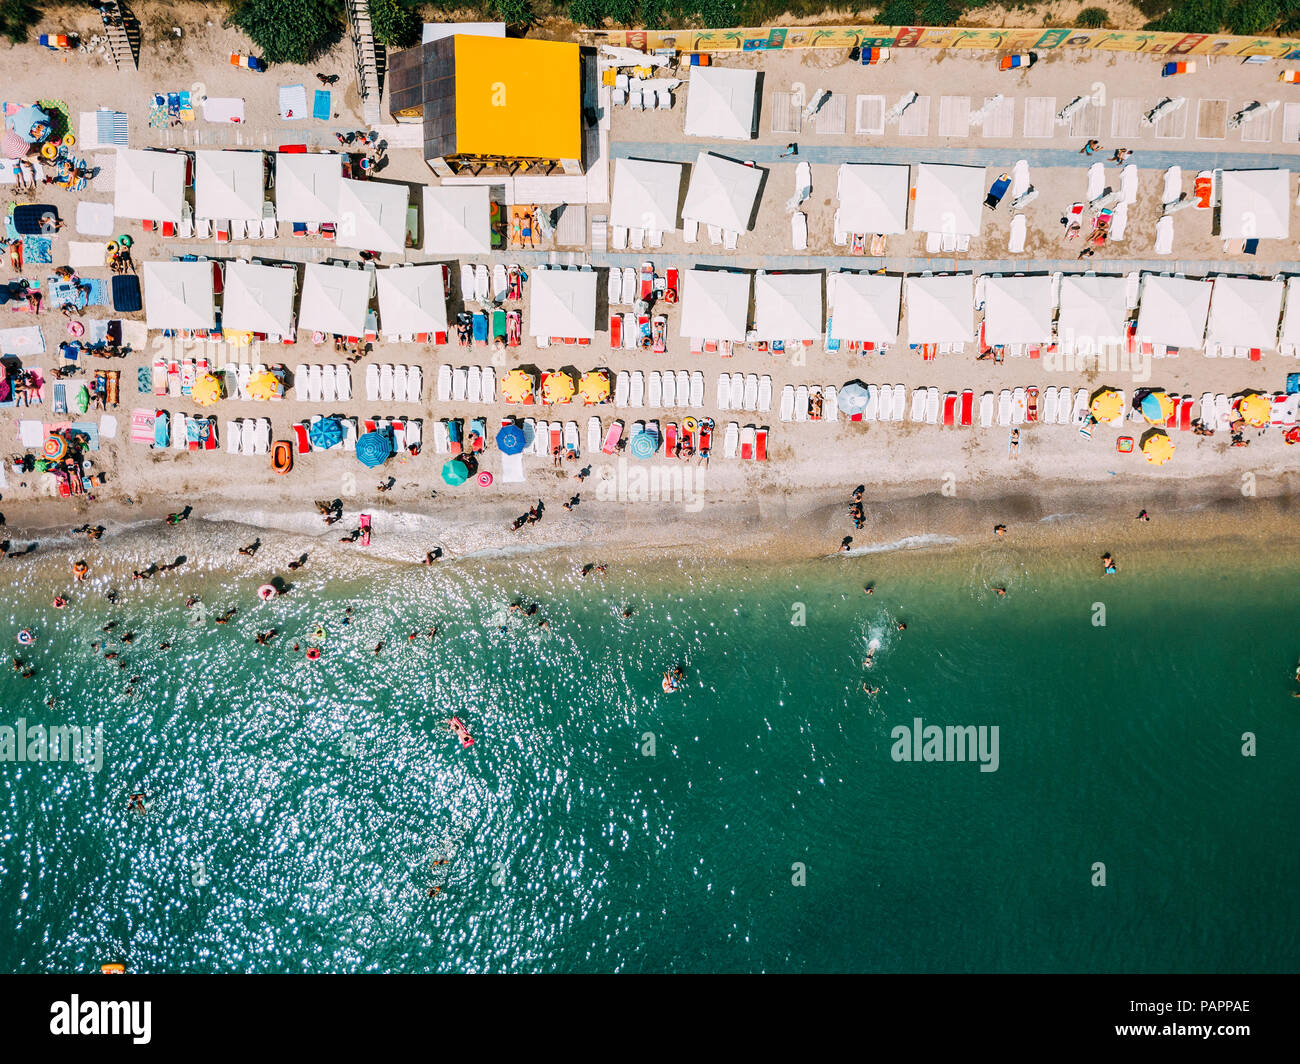 COSTINESTI, Roumanie - 15 juillet 2018 : Vue aérienne du drone volant de personnes foule se détendre sur la plage de Costinesti Roumanie Banque D'Images